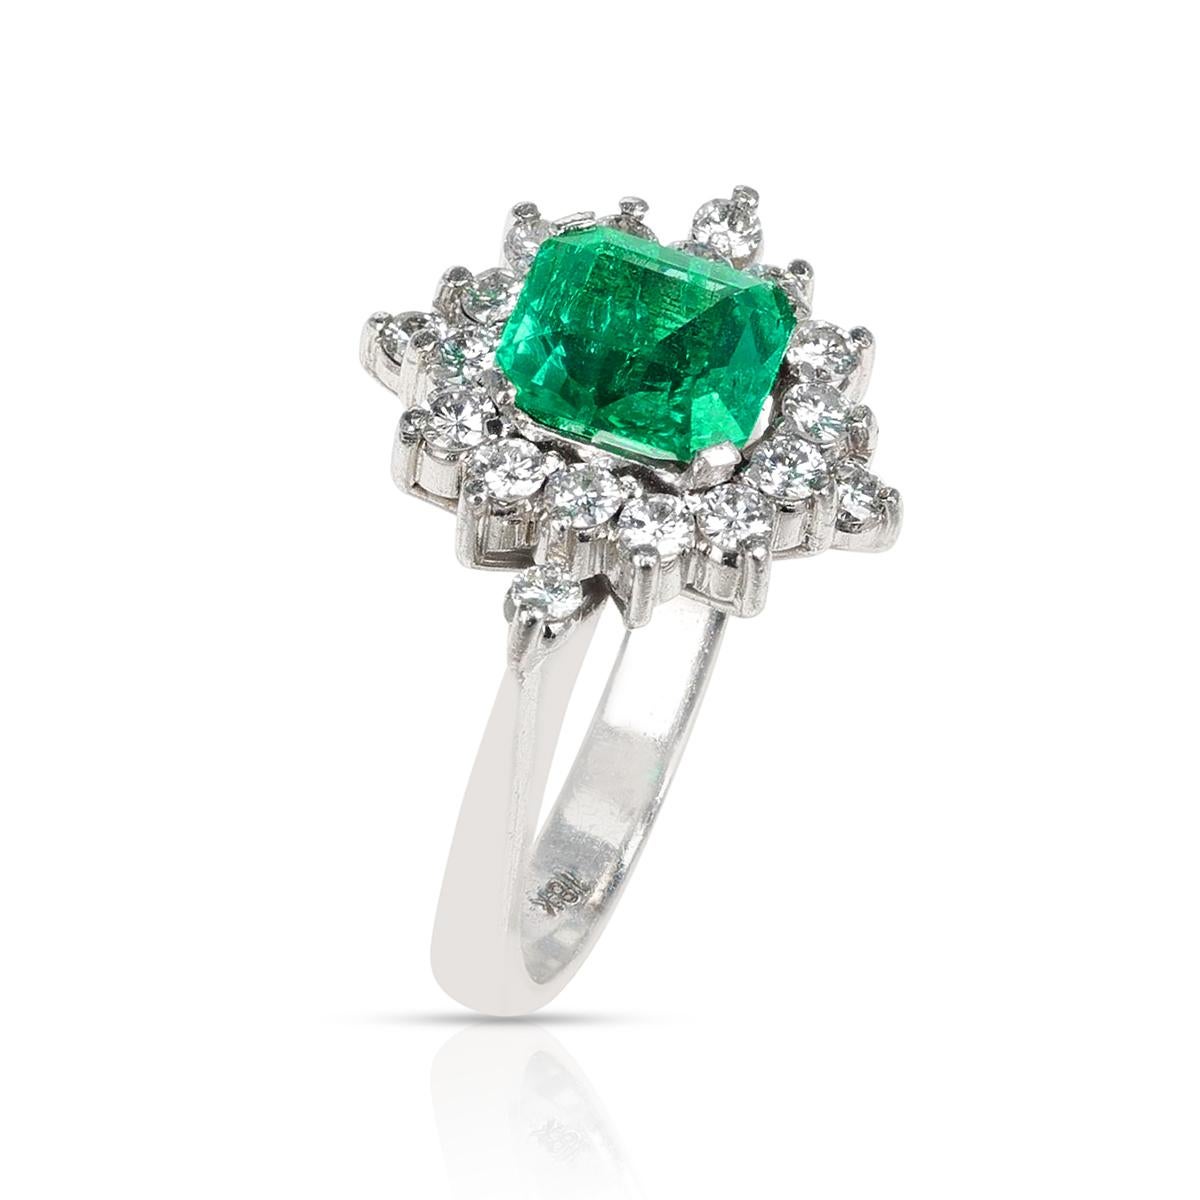 Ein 1,45 Quadrat Smaragd-Schliff und Diamant-Ring aus 18K Weißgold. Die Ringgröße ist US 5.75. Das Gesamtgewicht beträgt 5,64 Gramm. 

